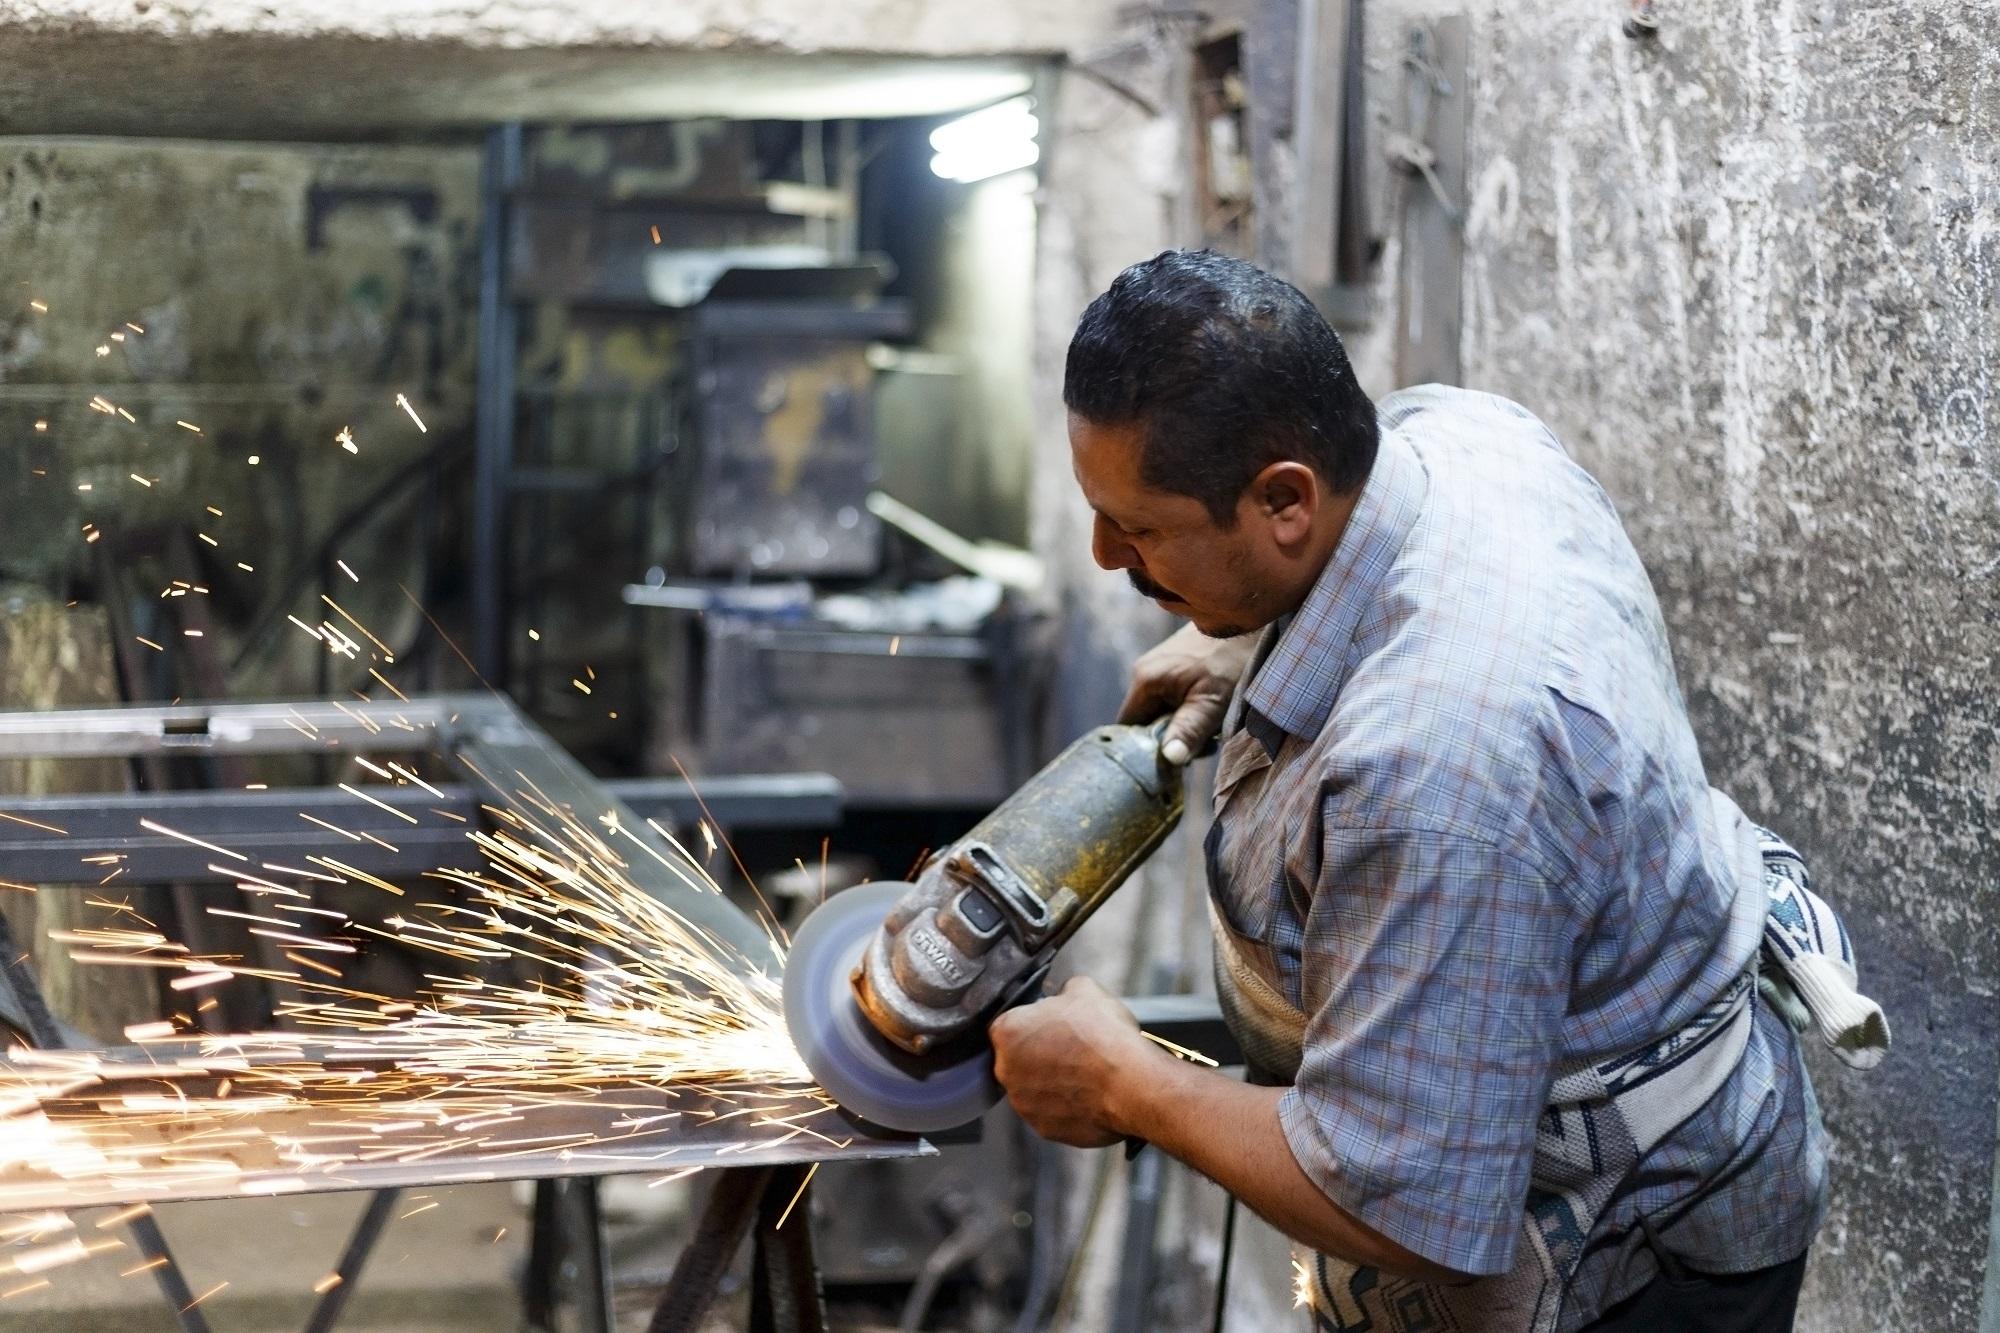 بلغ حجم قوة العمل في مصر 28.406 مليون فرد بين تموز /يوليو، وأيلول/ سبتمبر. (Shutterstock)